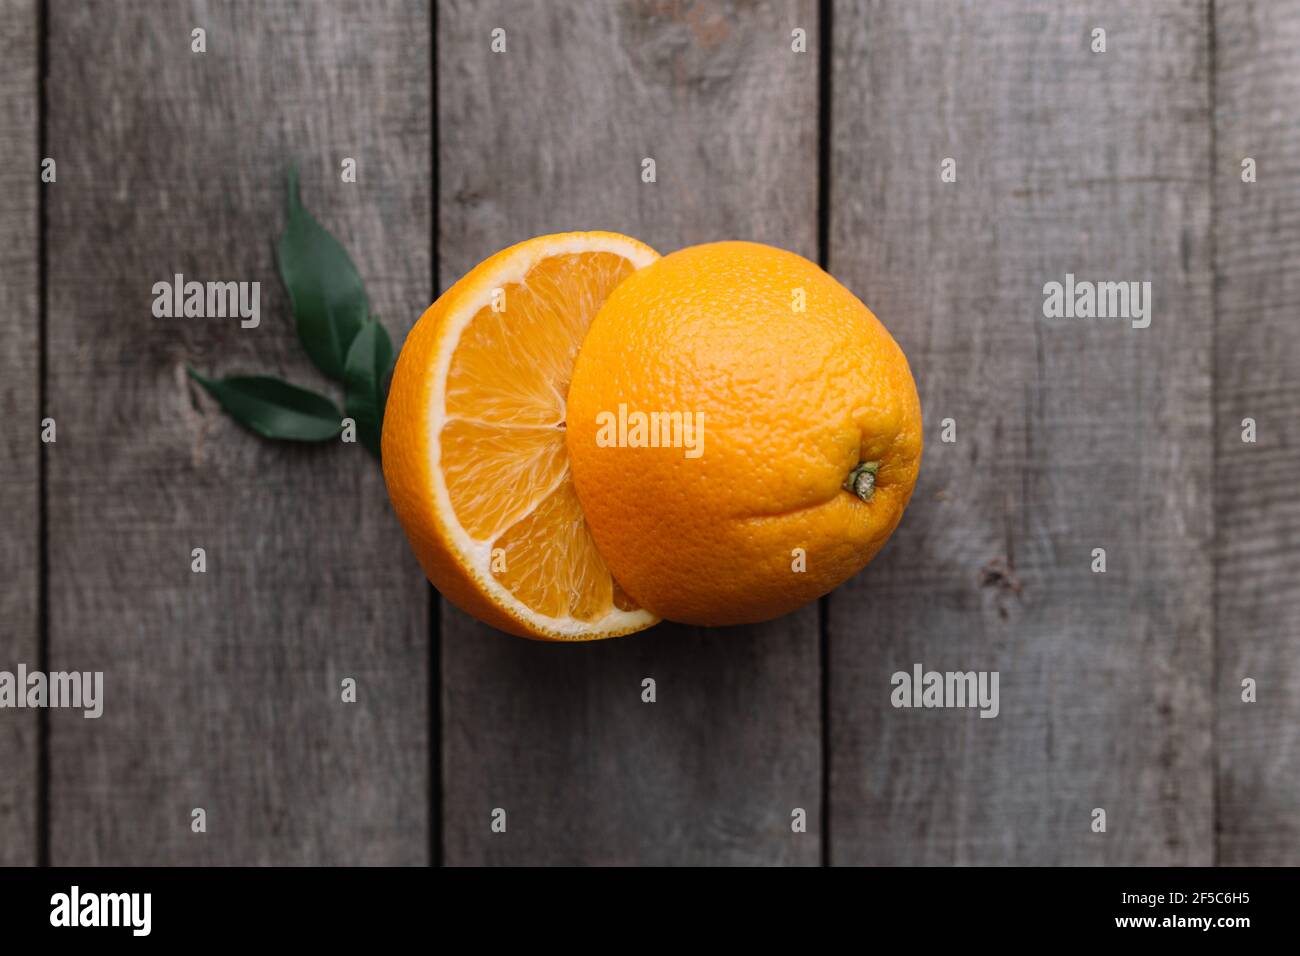 Moitiés de fruit orange sur fond en bois gris. Pulpe d'orange et feuilles vertes Banque D'Images